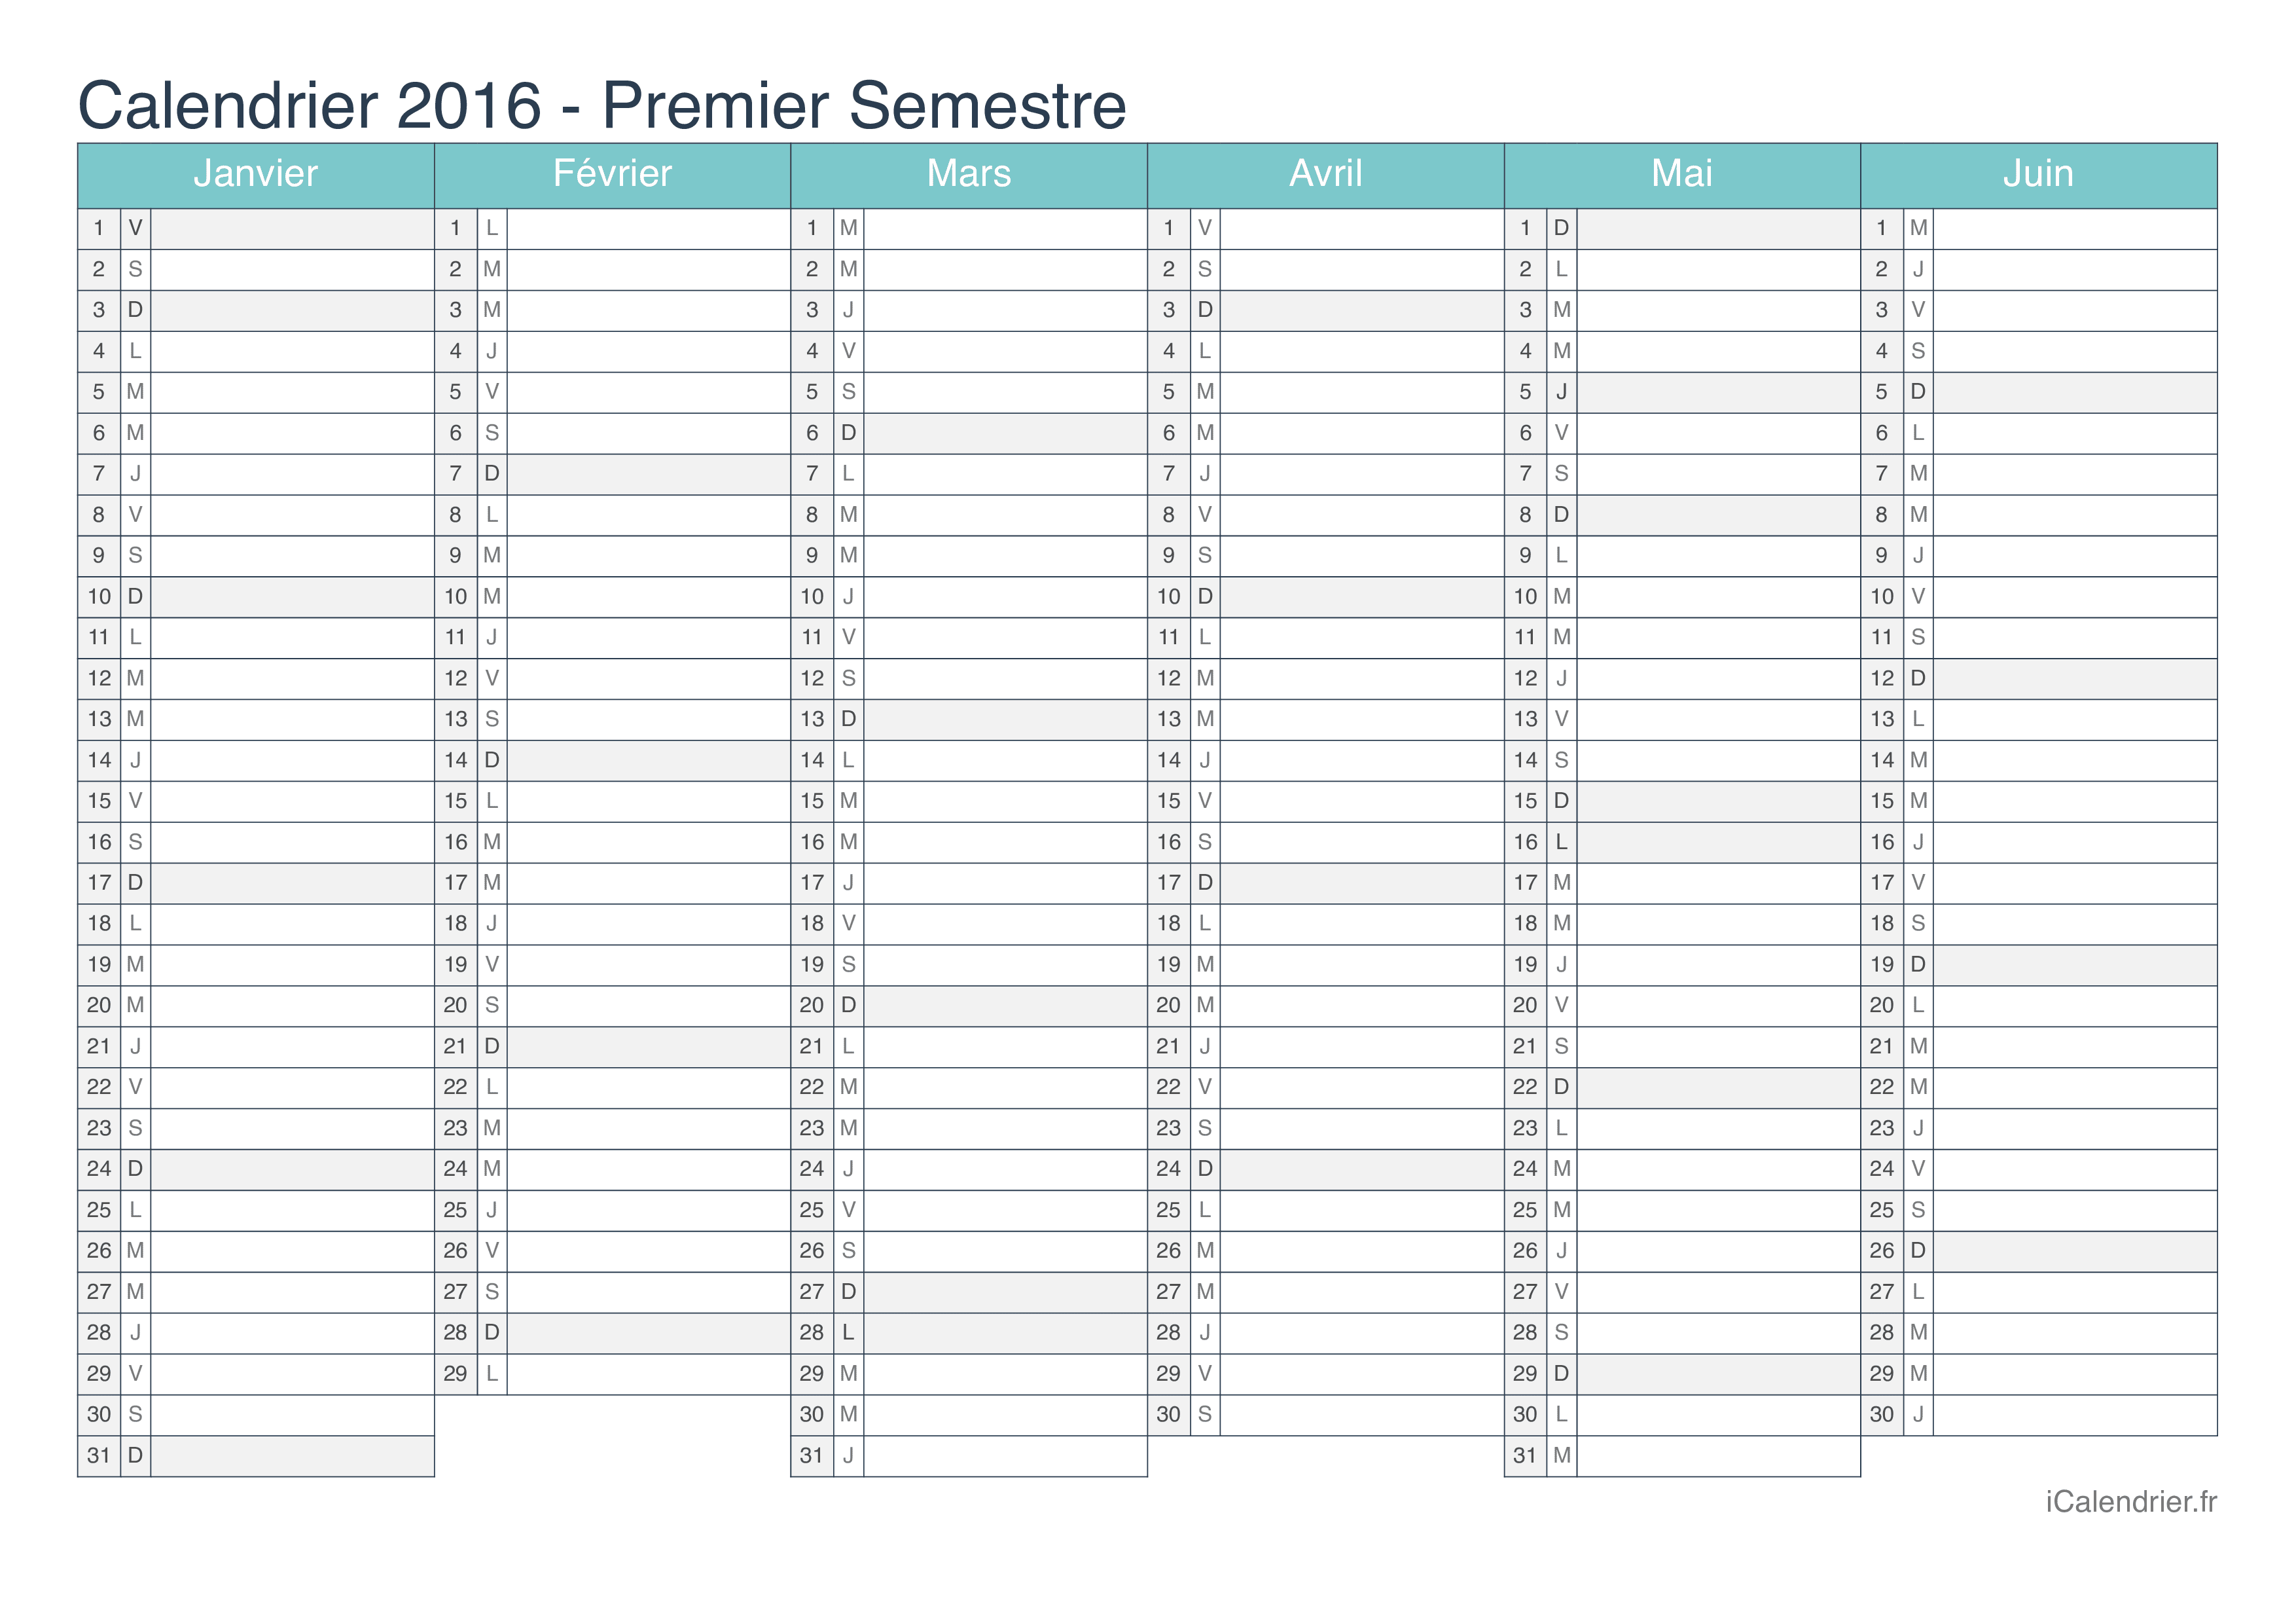 Calendrier par semestre 2016 - Turquoise